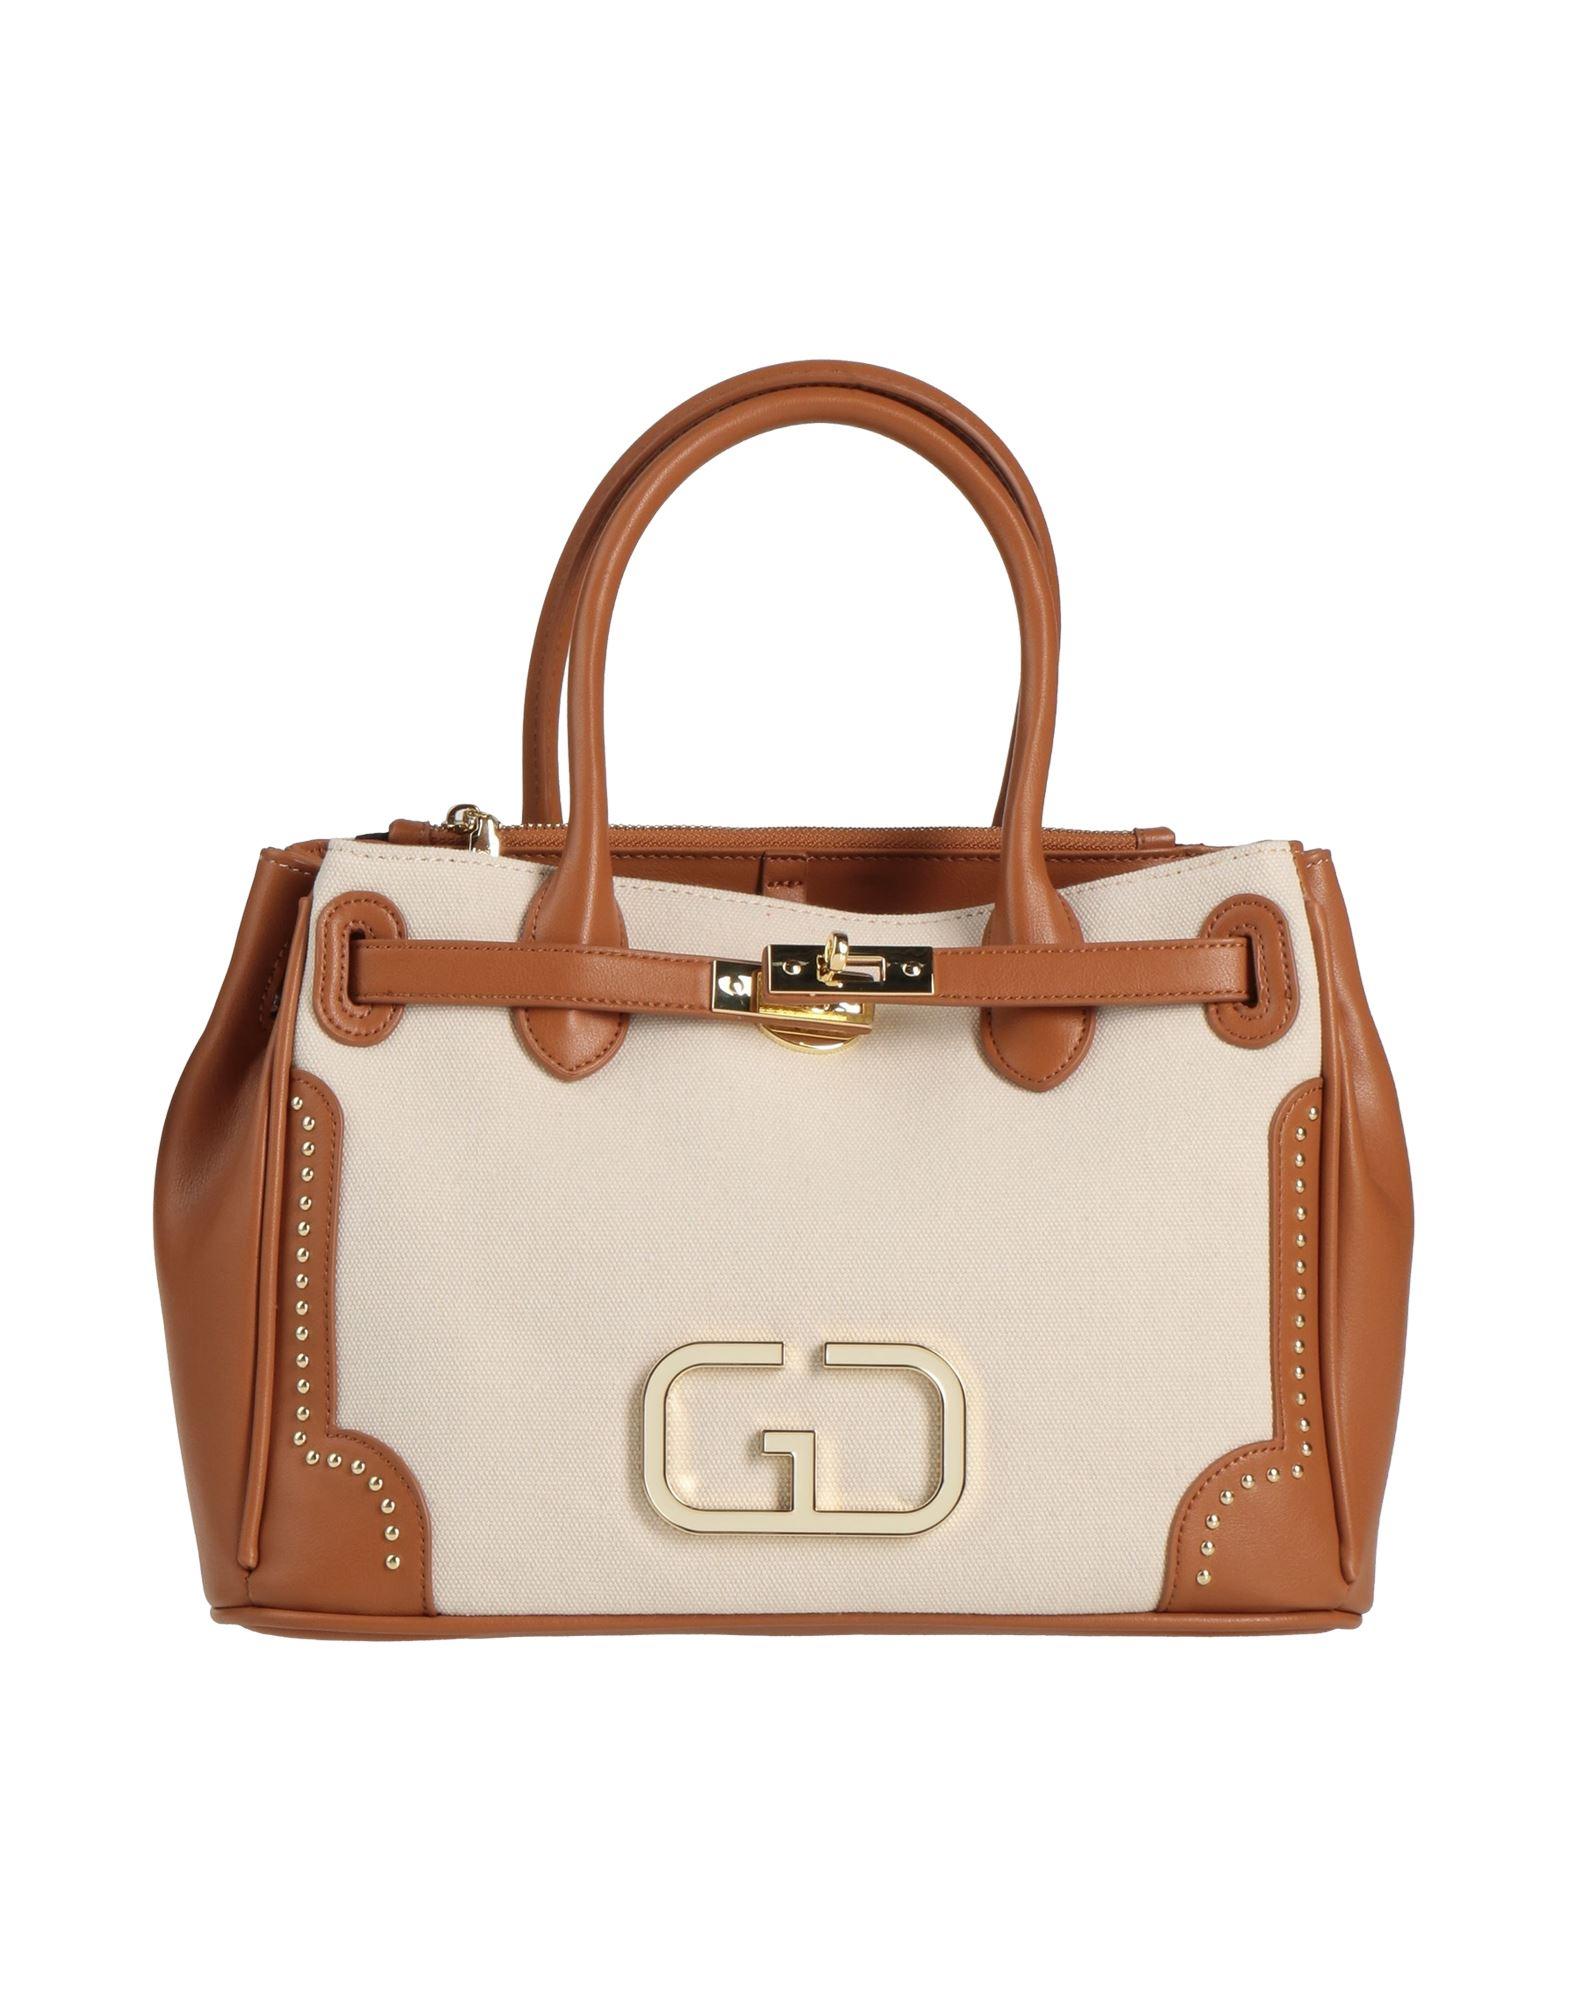 ⭐ Gio & Co Milan ⭐Women's Handbag Shoulder Strap Black Bag Pockets Väska  Laukku | eBay